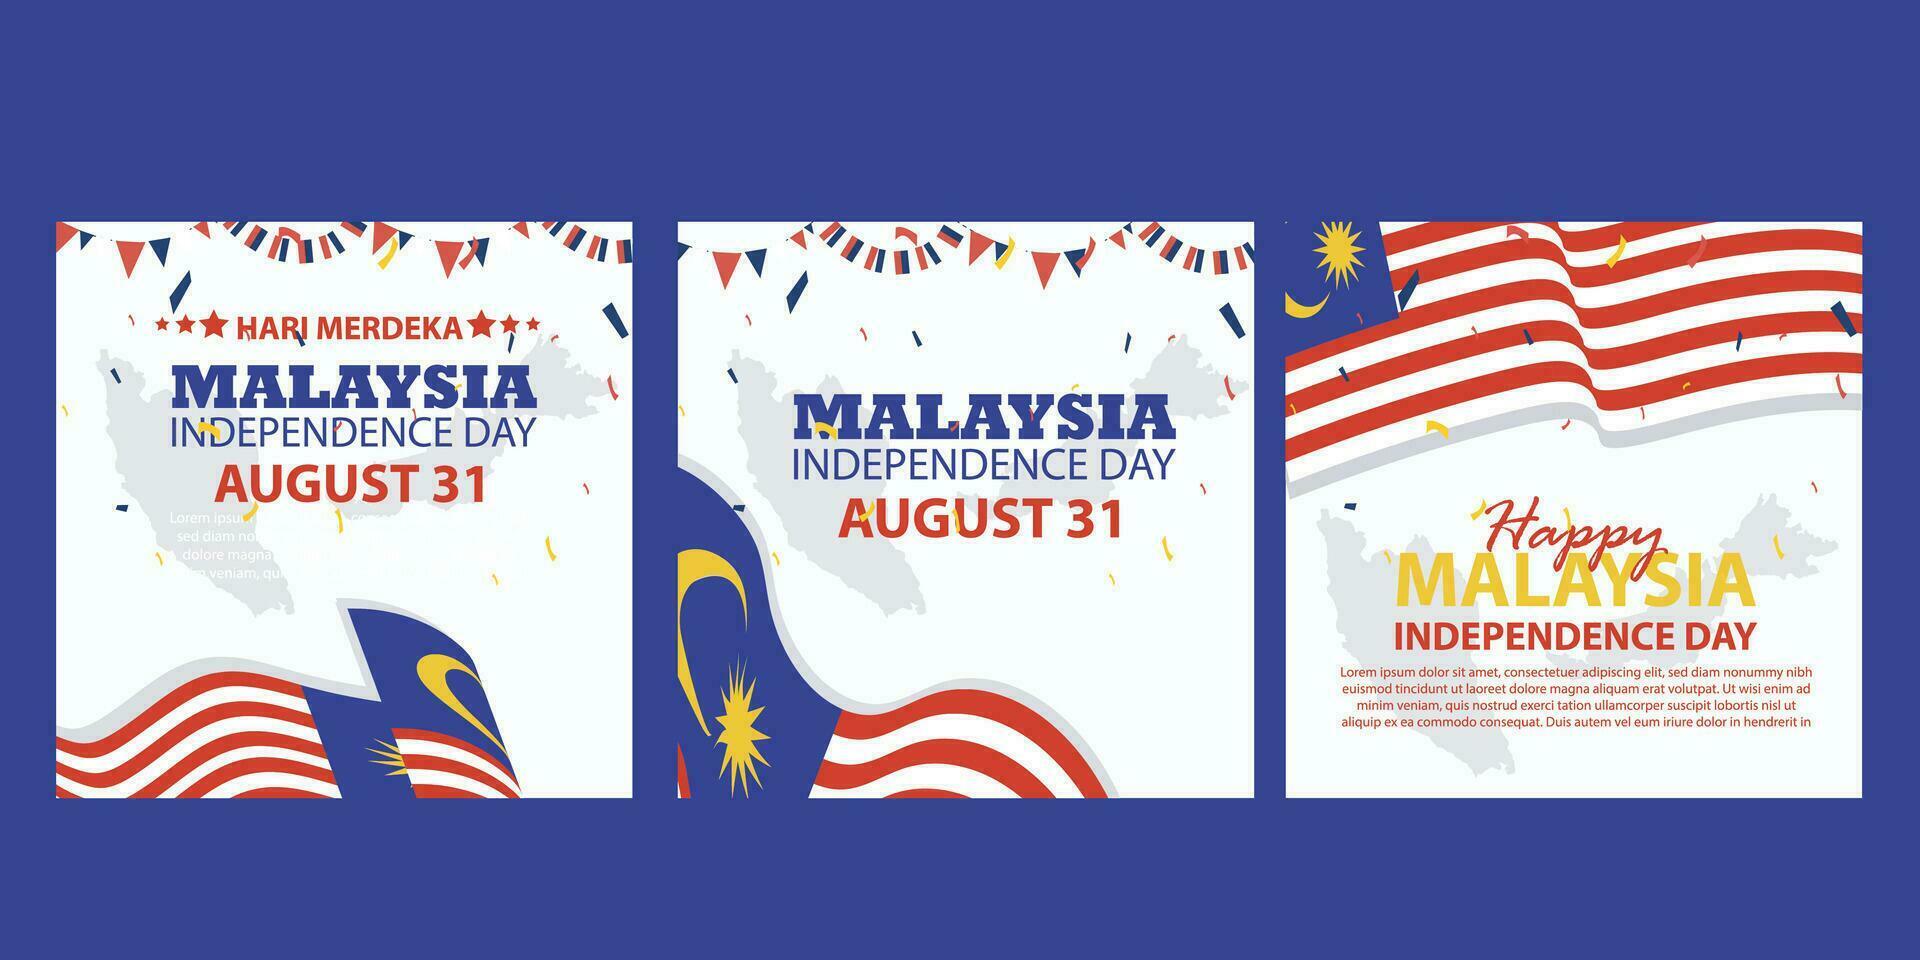 contento independencia día Malasia 31 agosto. bandera, social medios de comunicación correo, volantes o saludo tarjeta con el tema de azul rojo dificil y bandera de Malasia. vector ilustración